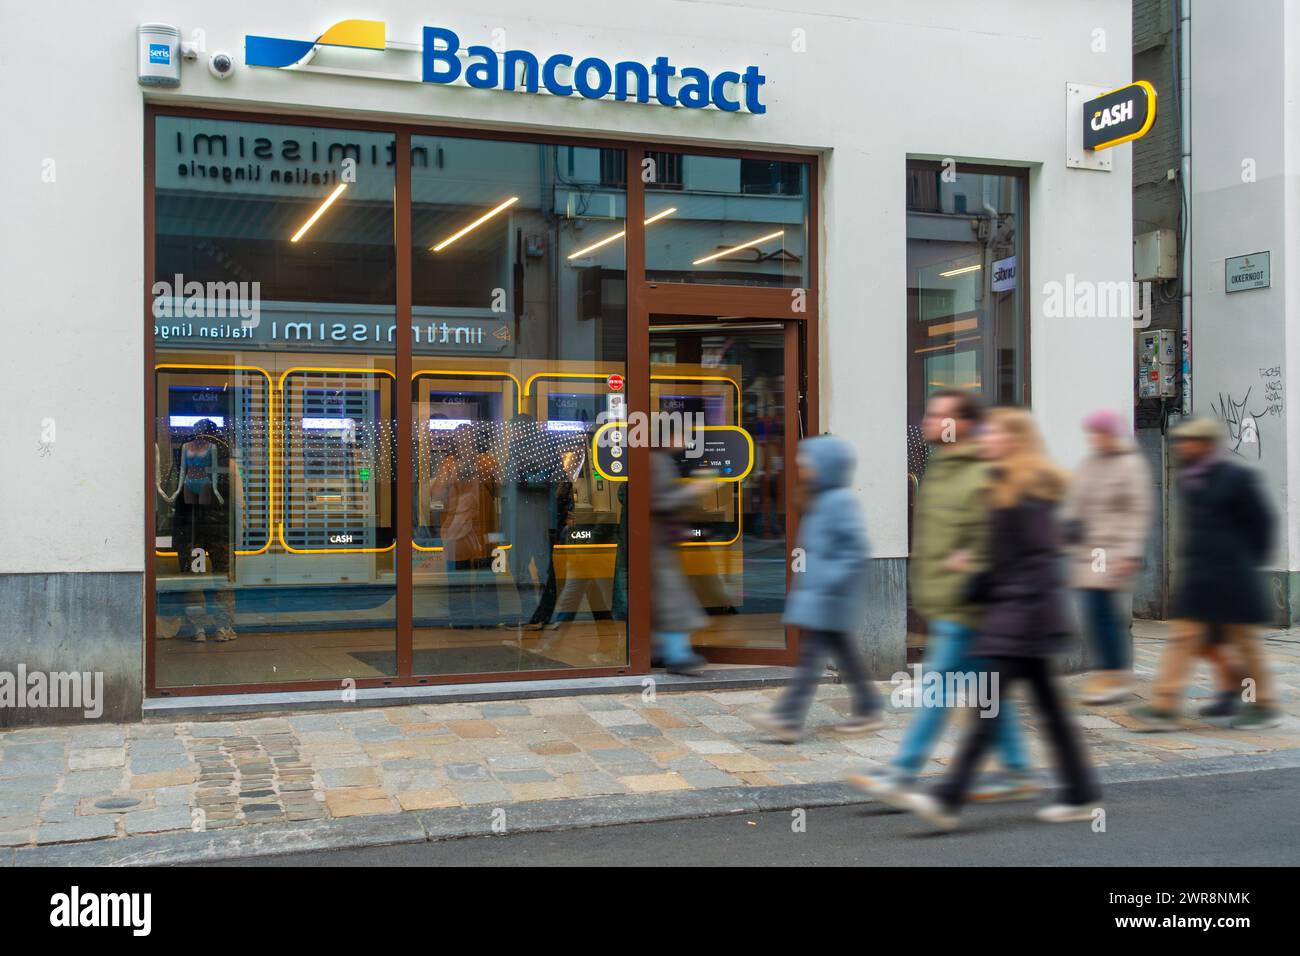 Les acheteurs passant devant le distributeur automatique de billets intérieur du point de TRÉSORERIE Bancontact neutre de banque dans la rue commerçante de la ville Gand / Gand, Flandre orientale, Belgique Banque D'Images